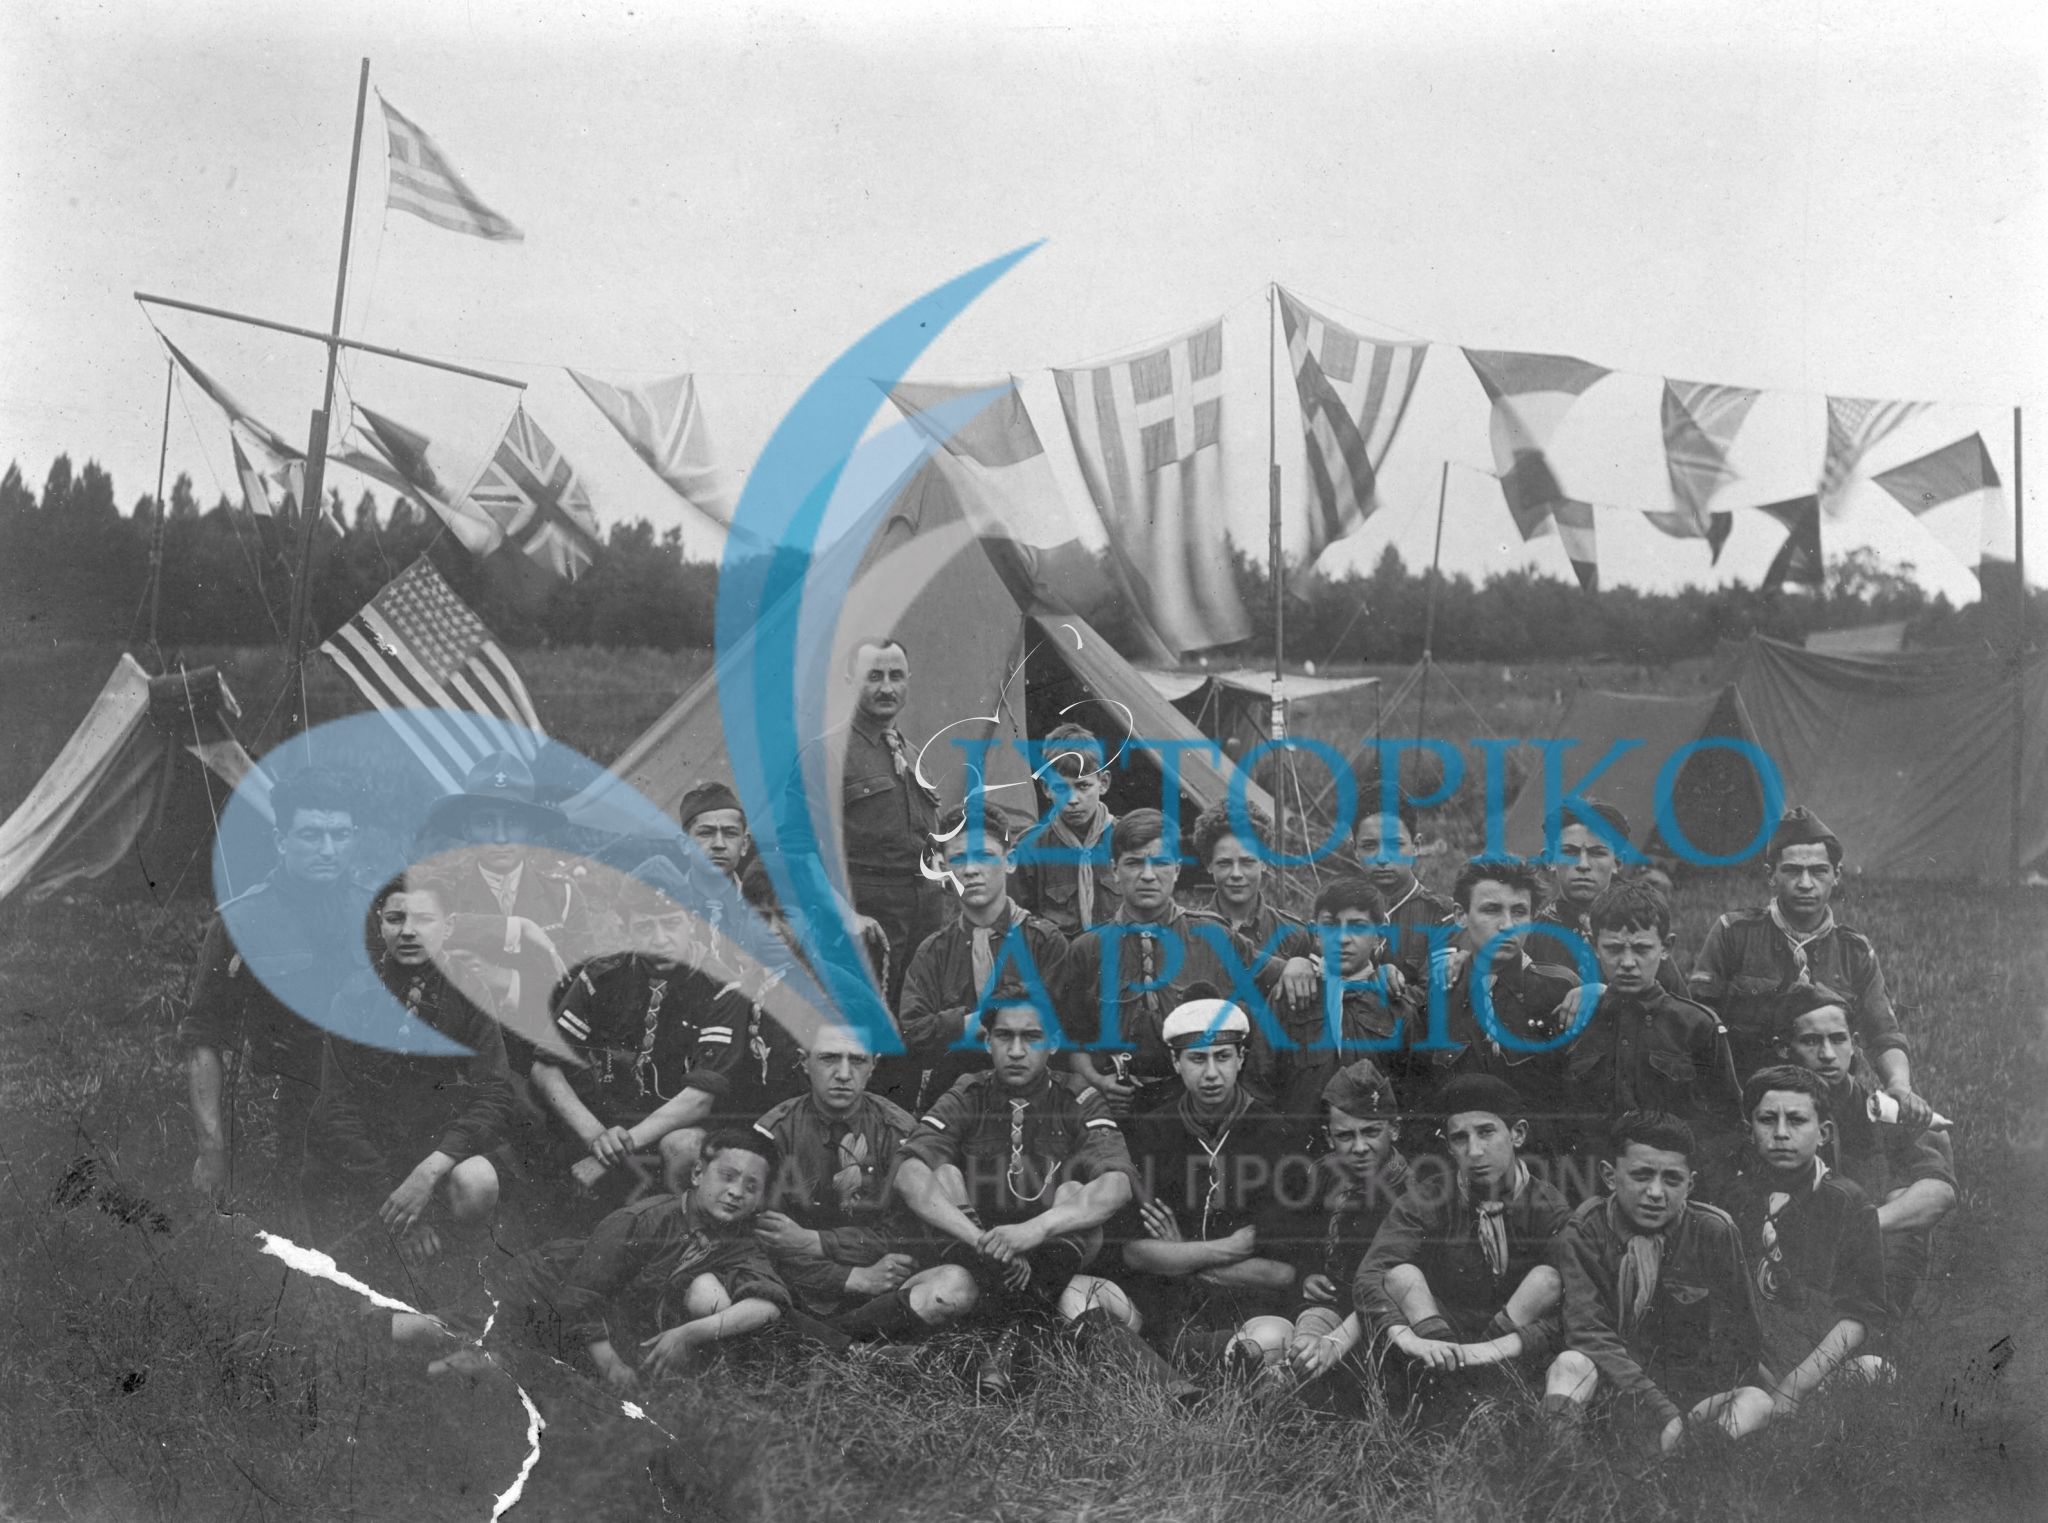 Η 1η ελληνική ομάδα Παρισίων με τον ιδρυτή της Ησαϊα Ησαϊα συμμετέχει σε προσκοπική γιορτή στο Meudon στη θέση Patte d' Oie τον Ιούλιου του 1923. Mε το βέλος έχει σημαιωθεί ο μετέπειτα αρχηγός της ομάδας Αν. Ωρολογόπουλος.